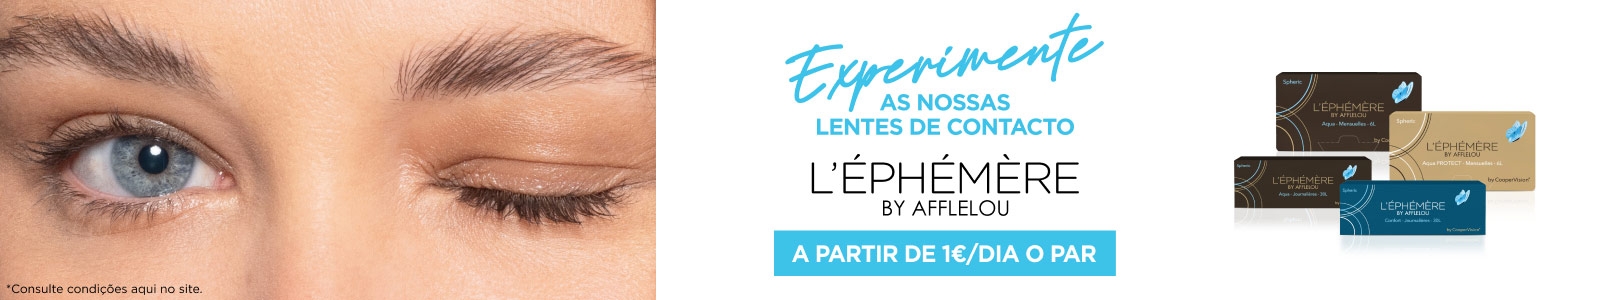 Experimente as nossas lentes de contacto L'Ephémère by Afflelou a partir de 1€ / dia o par